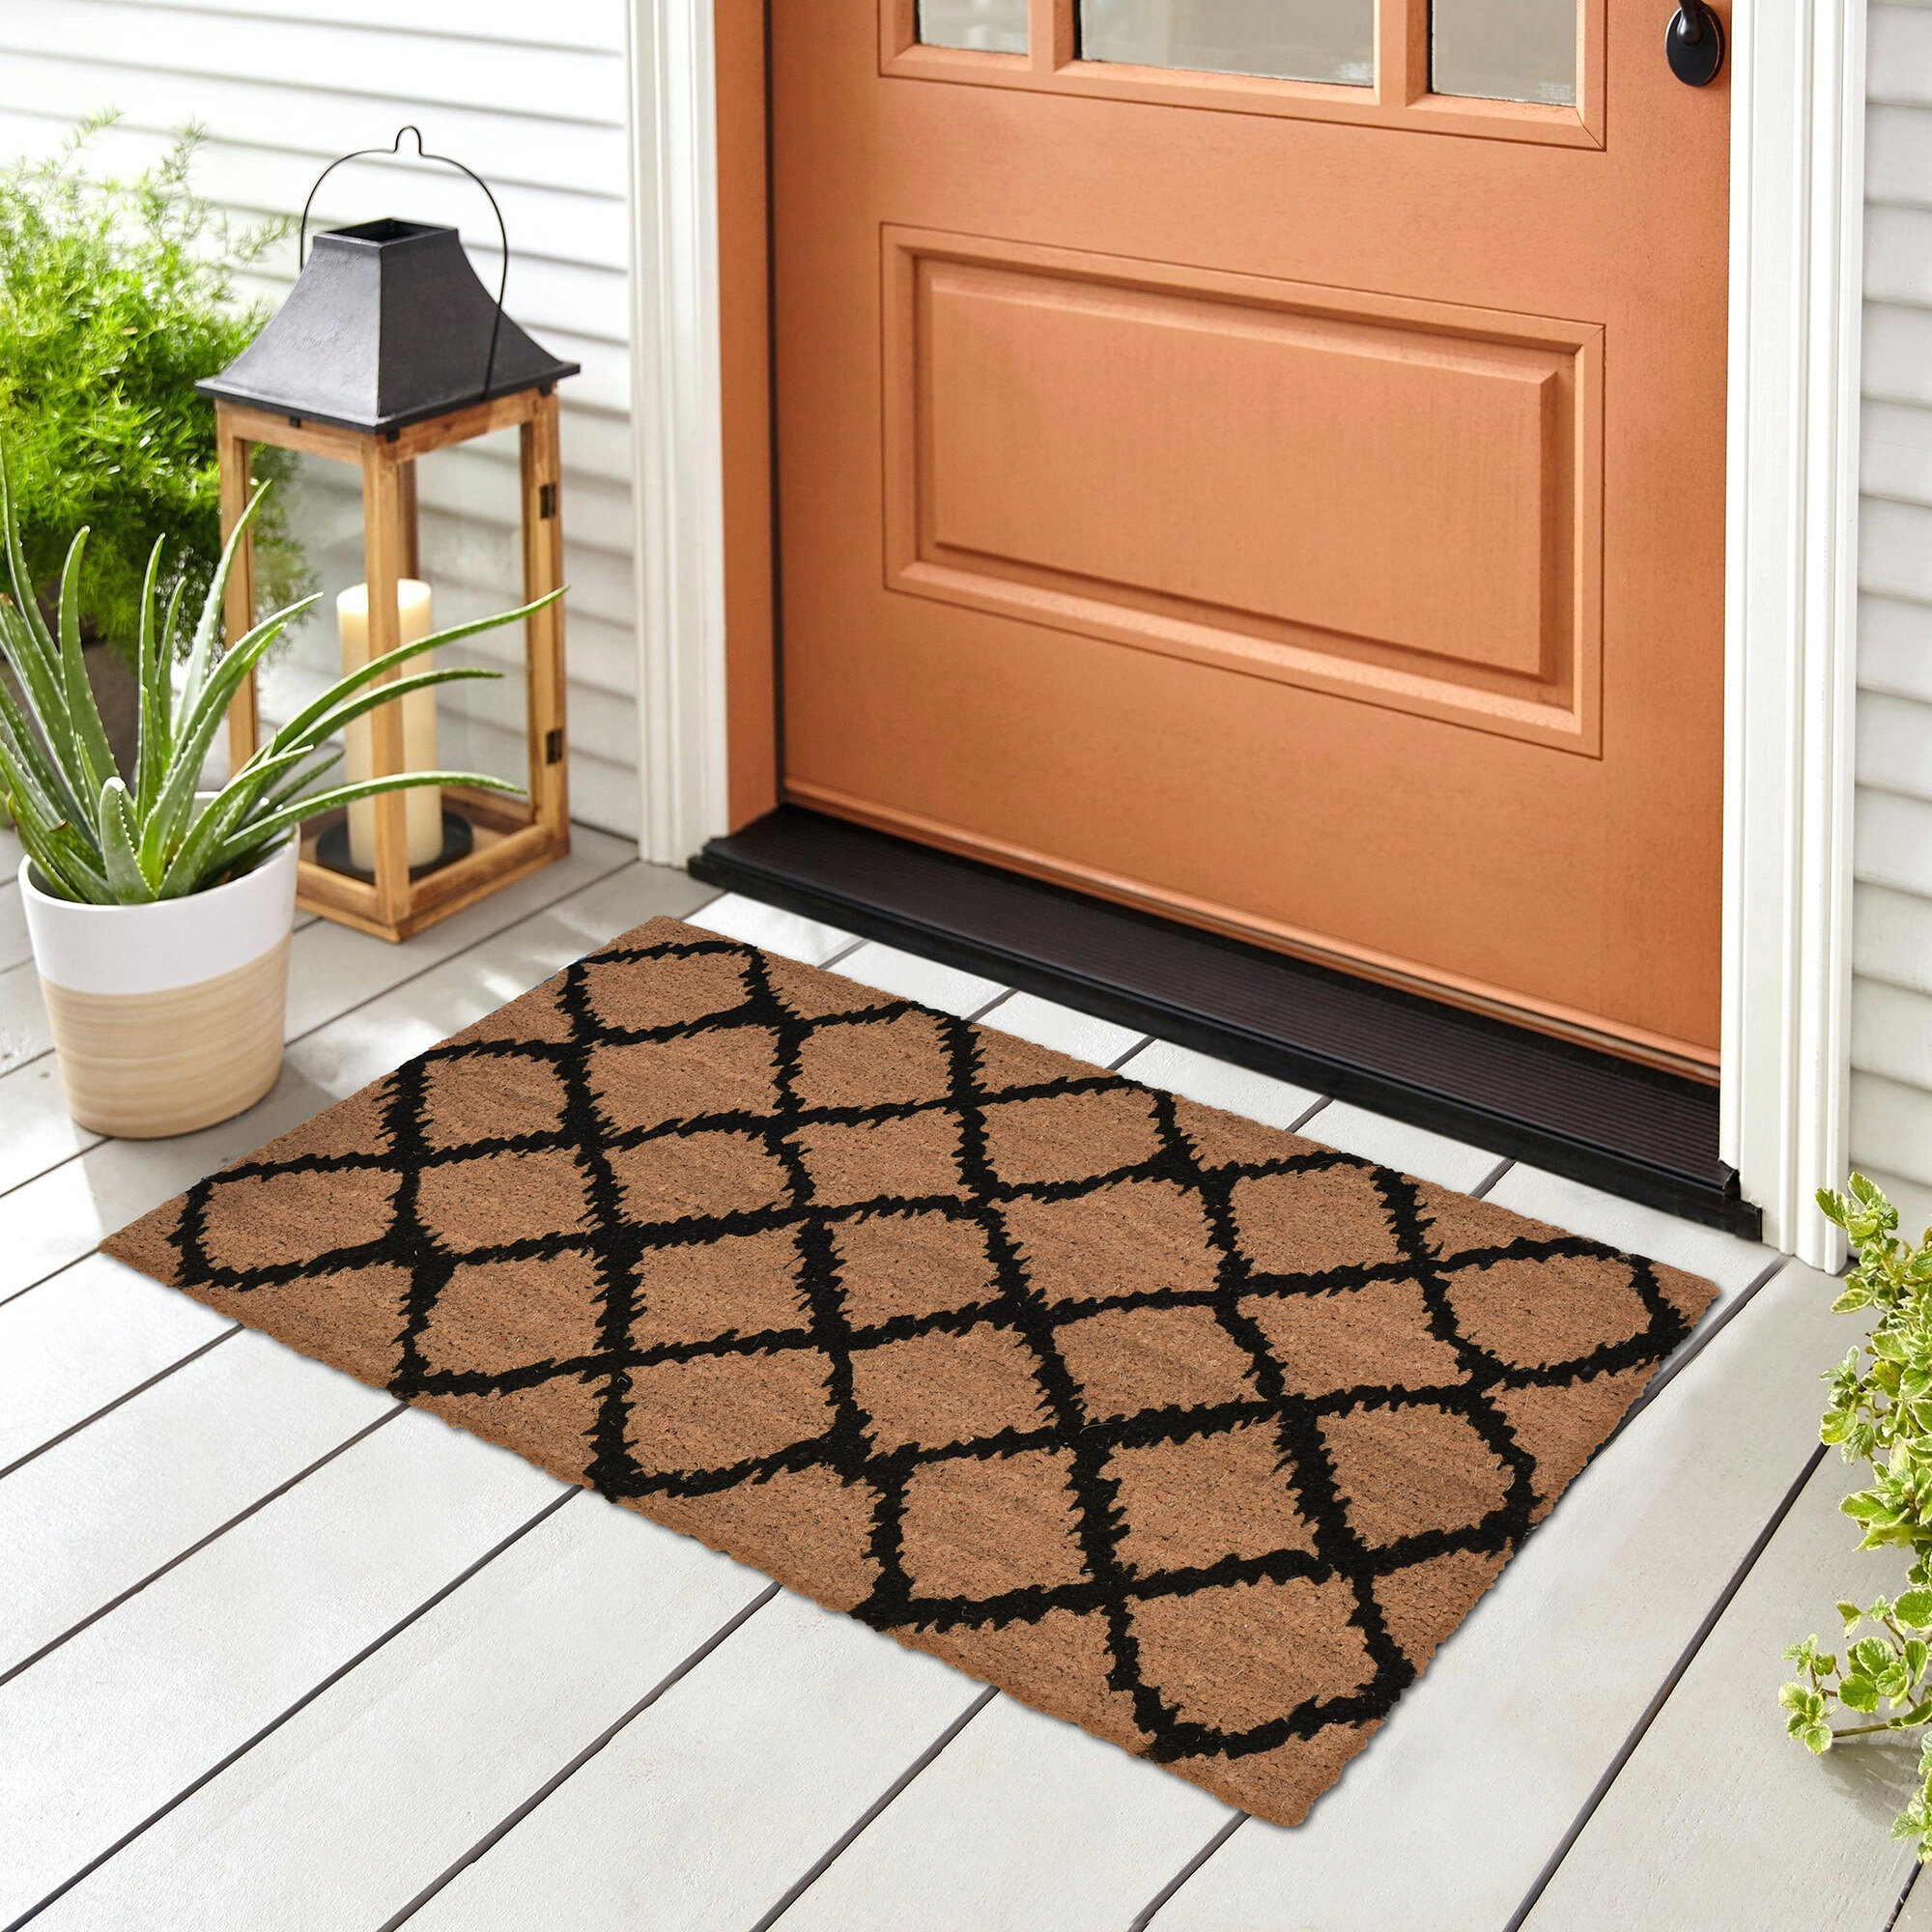 https://assets.wfcdn.com/im/66442637/compr-r85/1891/189198072/condit-non-slip-geometric-outdoor-doormat.jpg